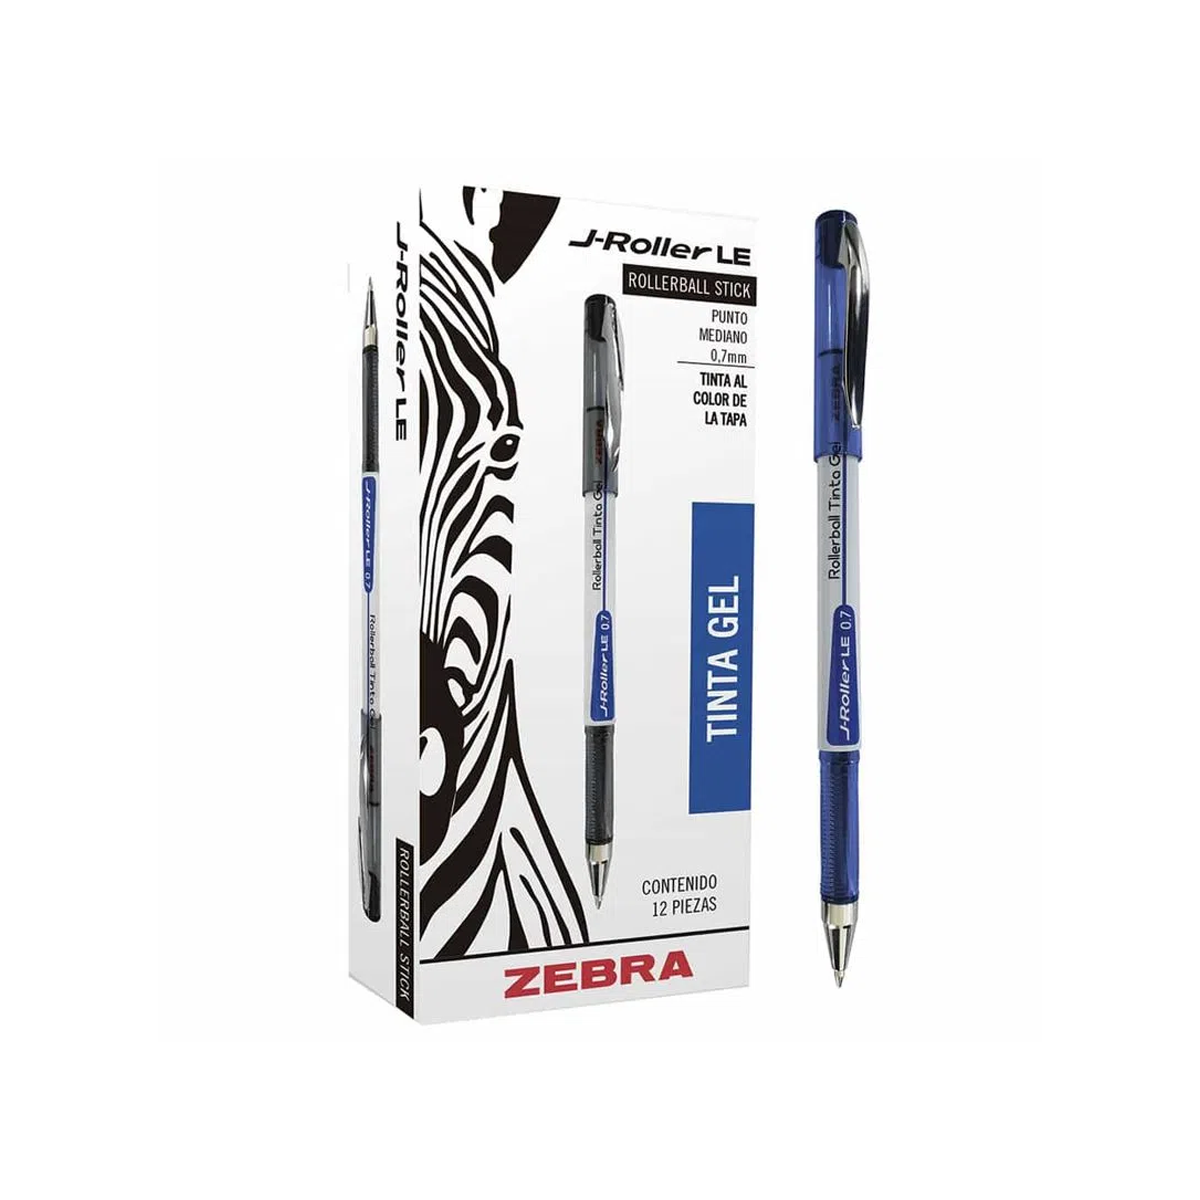 Bolígrafo Zebra J-Roller Le 8001-Le Tinta En Gel Azul Punto Mediano 0.7Mm 12 Piezas